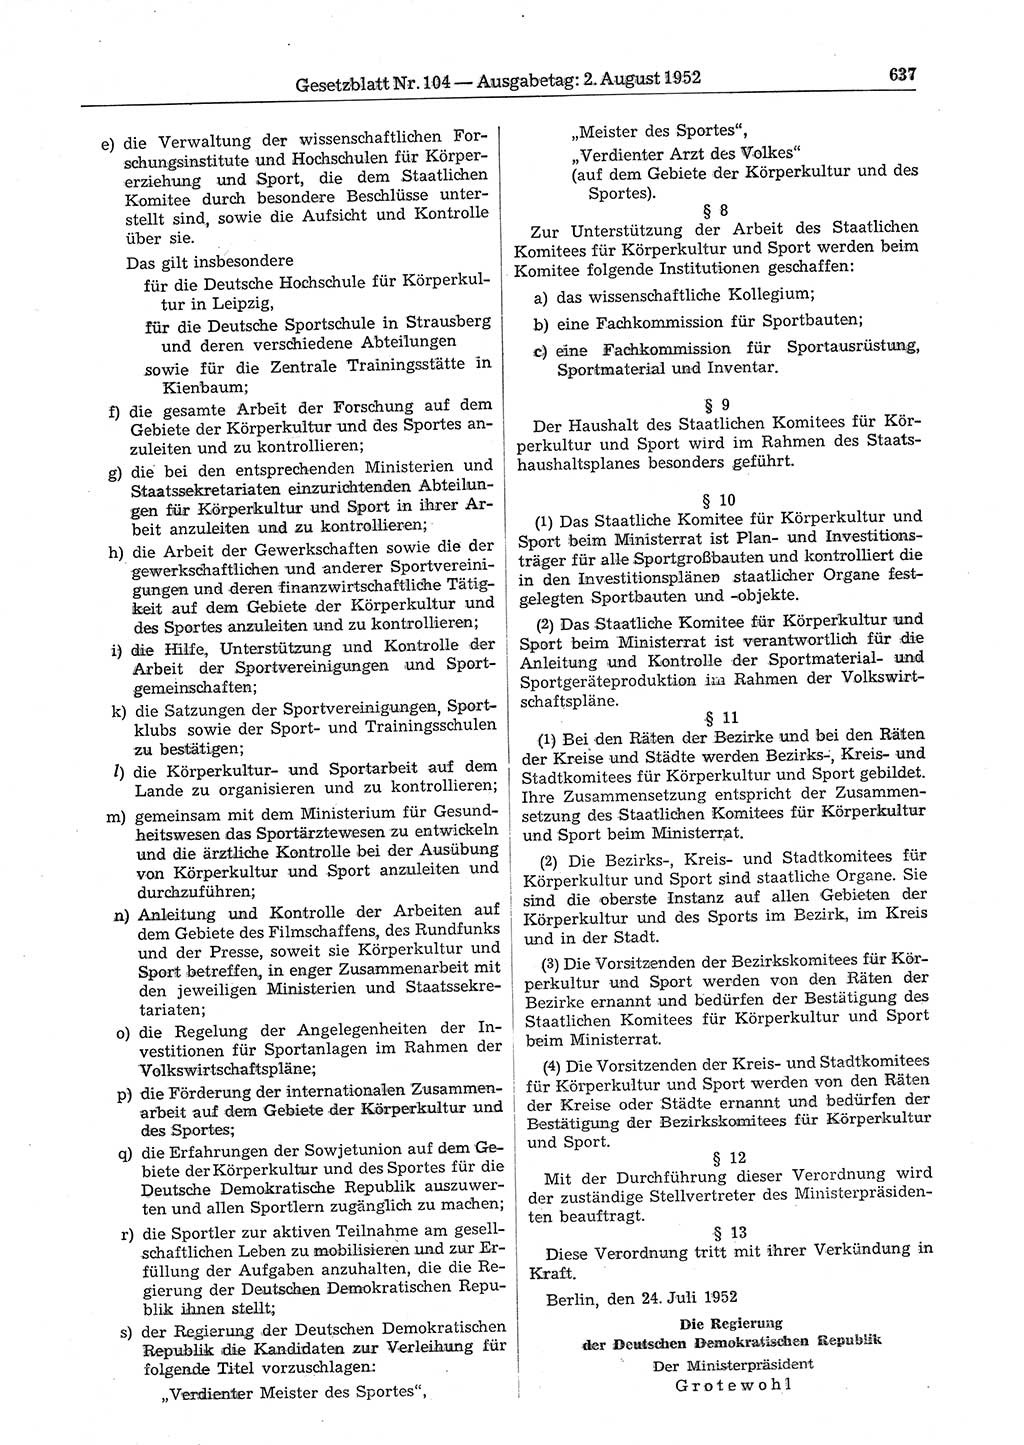 Gesetzblatt (GBl.) der Deutschen Demokratischen Republik (DDR) 1952, Seite 637 (GBl. DDR 1952, S. 637)